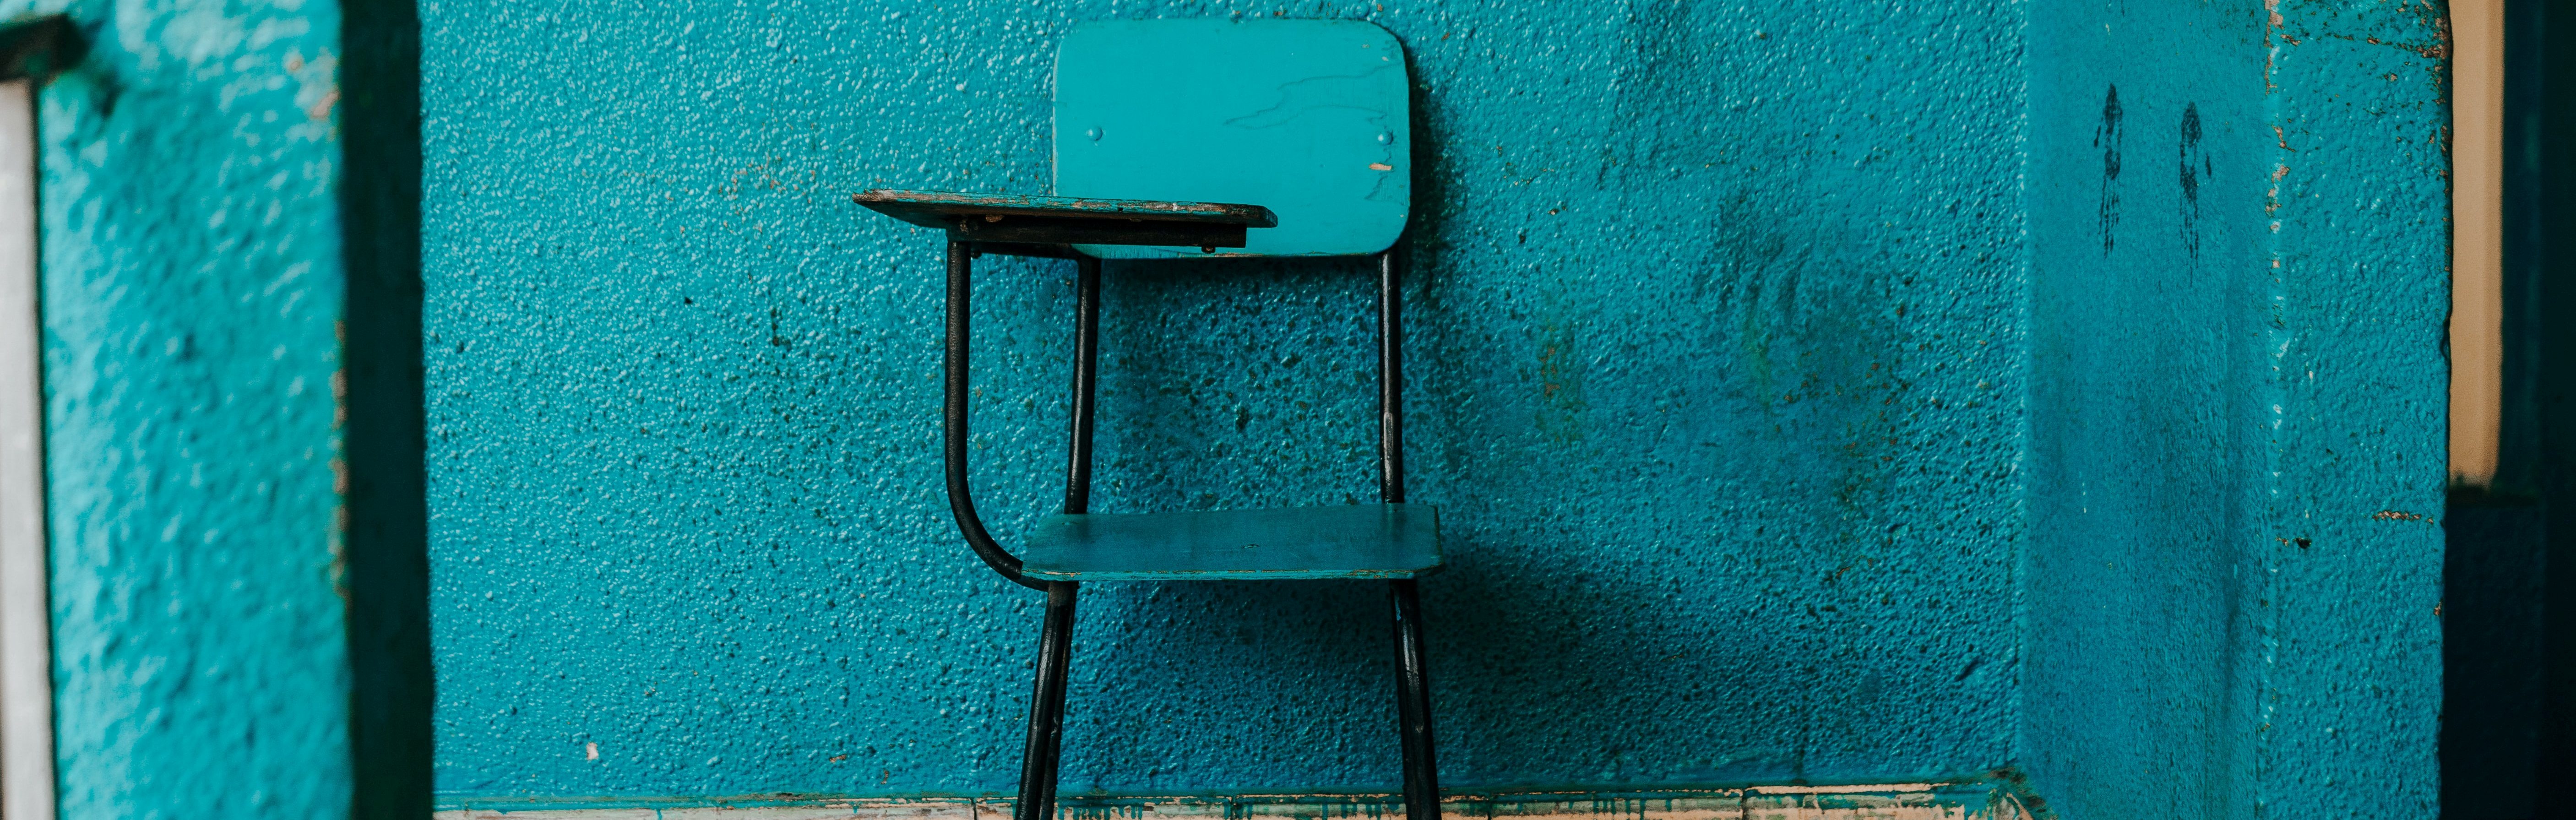 Photo of a small blue school desk